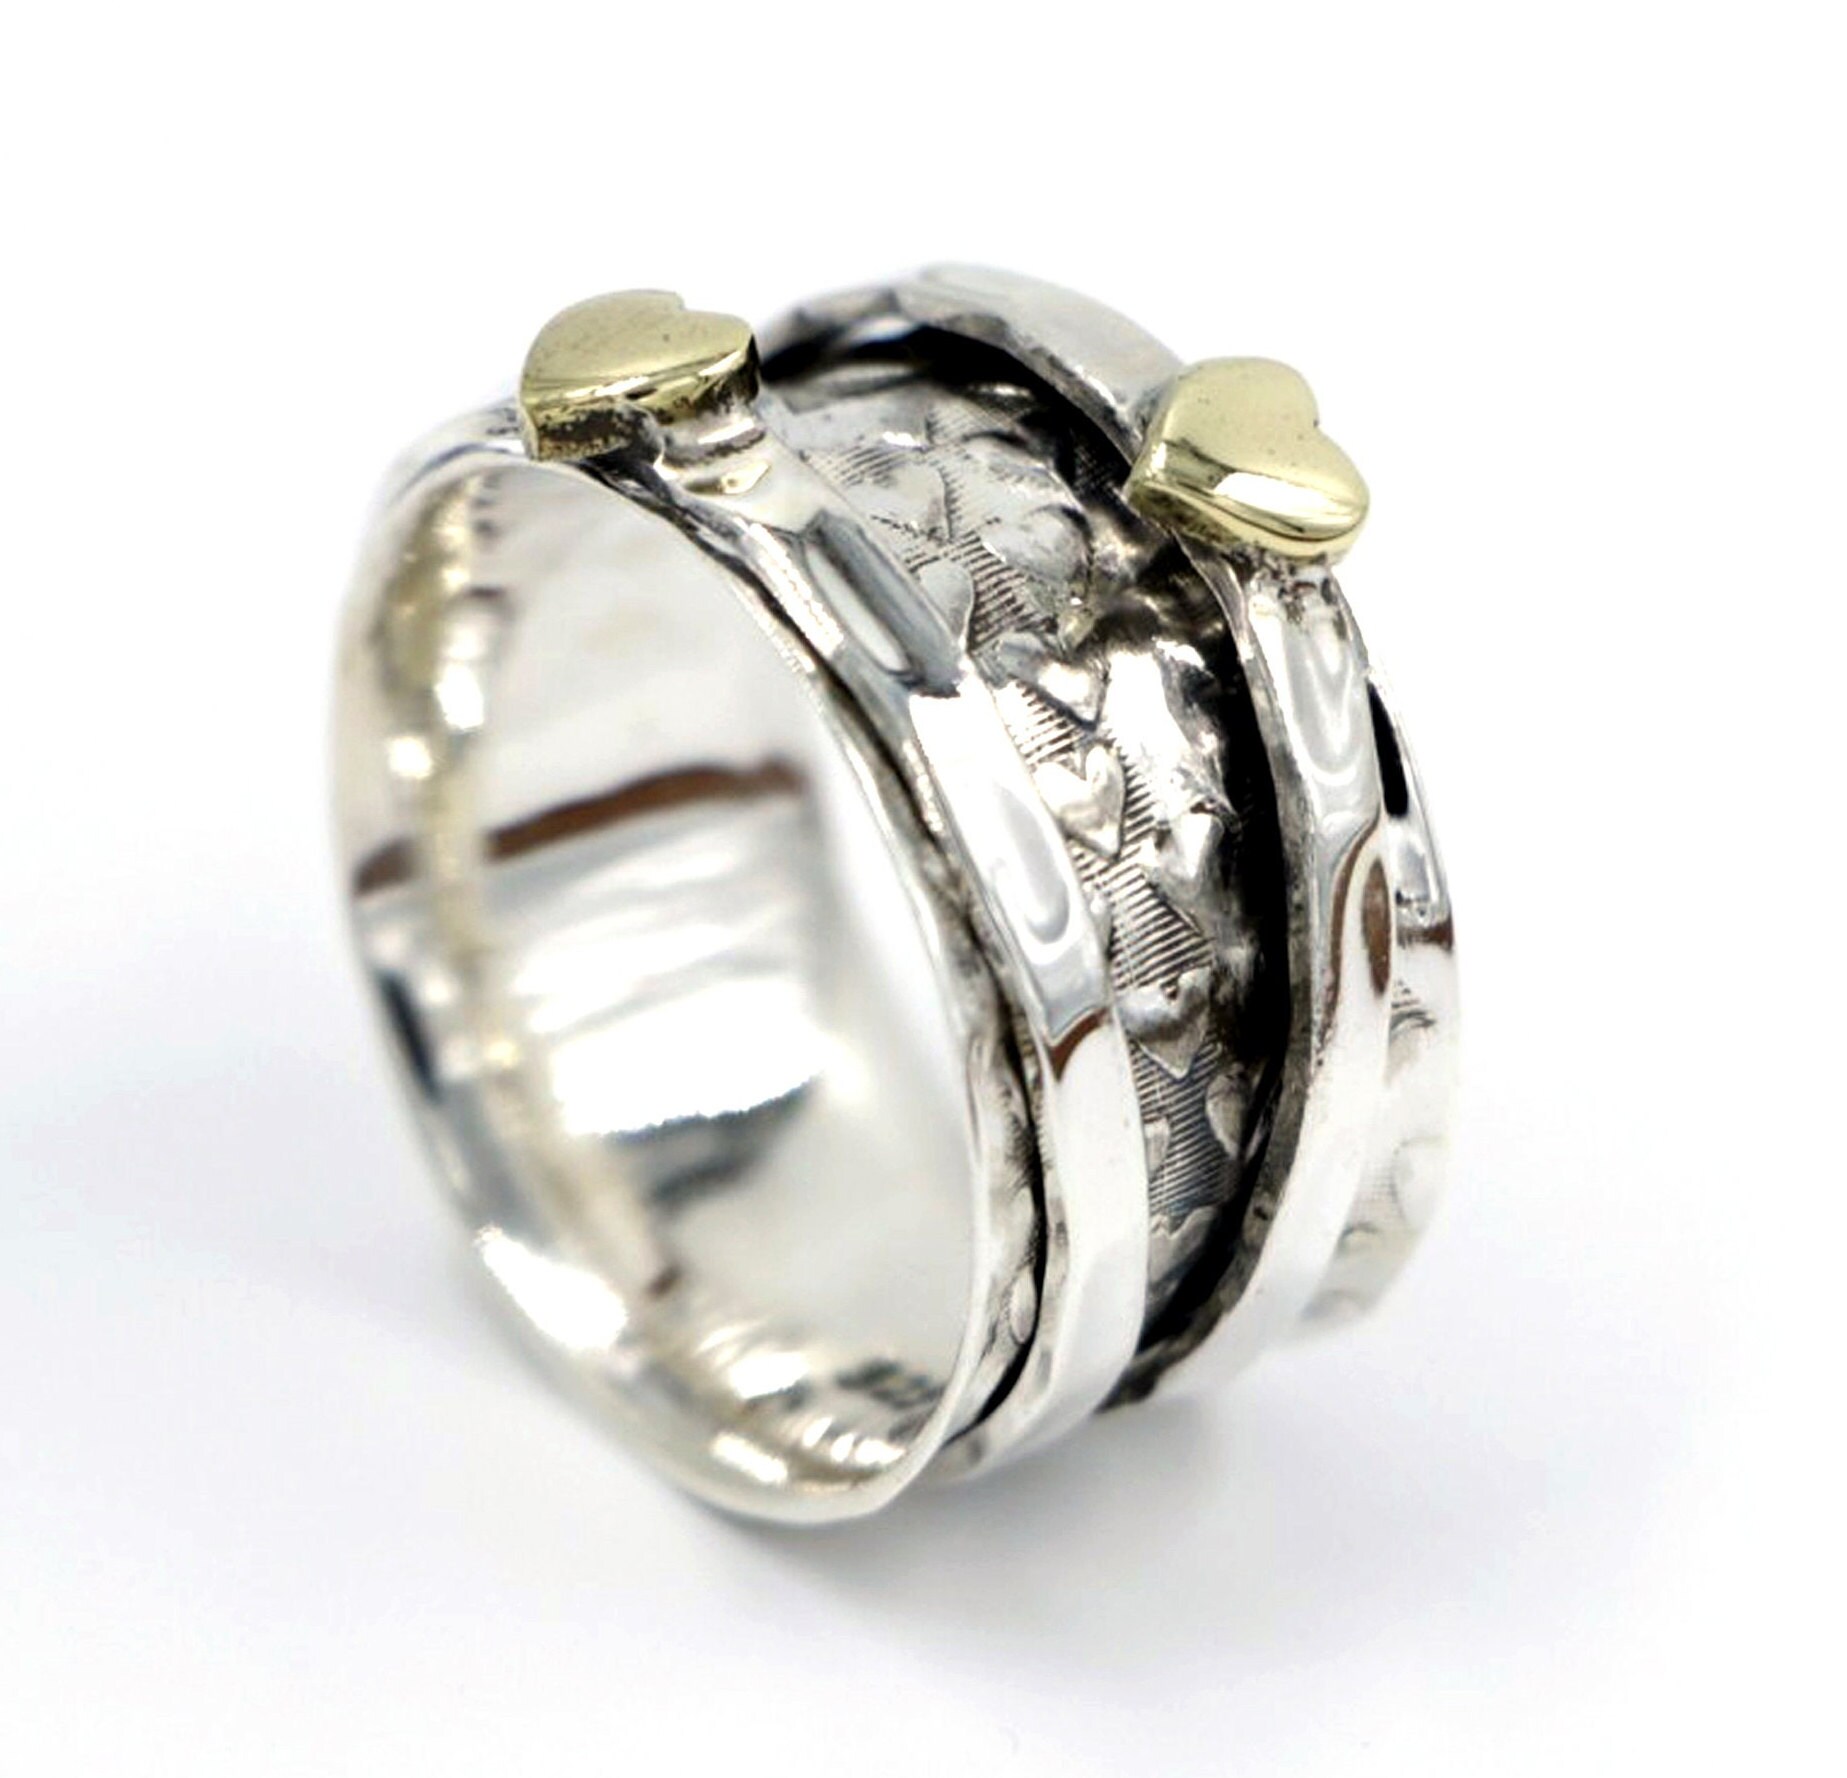 Herz Spinner Ring, 925 Sterling Silber Ringe Für Frauen, Angst Zappeln Daumen Handgemacht, Weihnachtsgeschenk Sie von JRPJEWELS